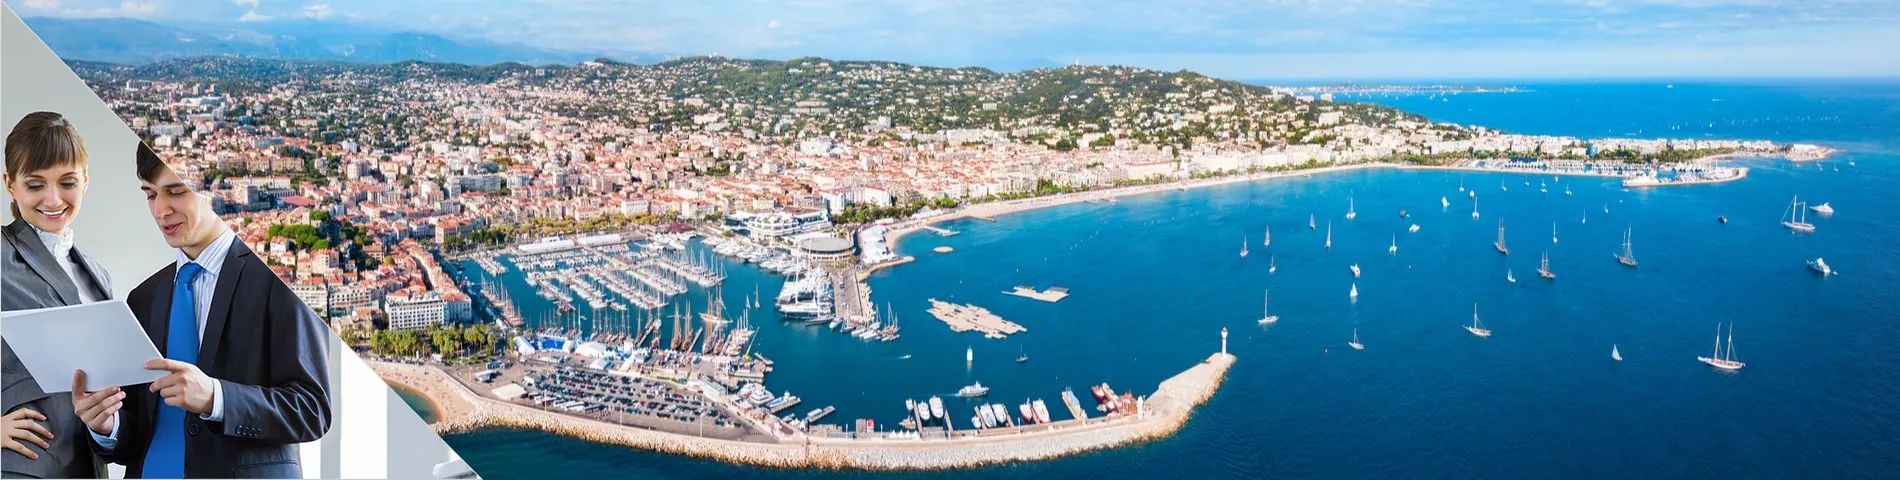 Cannes - Egyéni üzleti